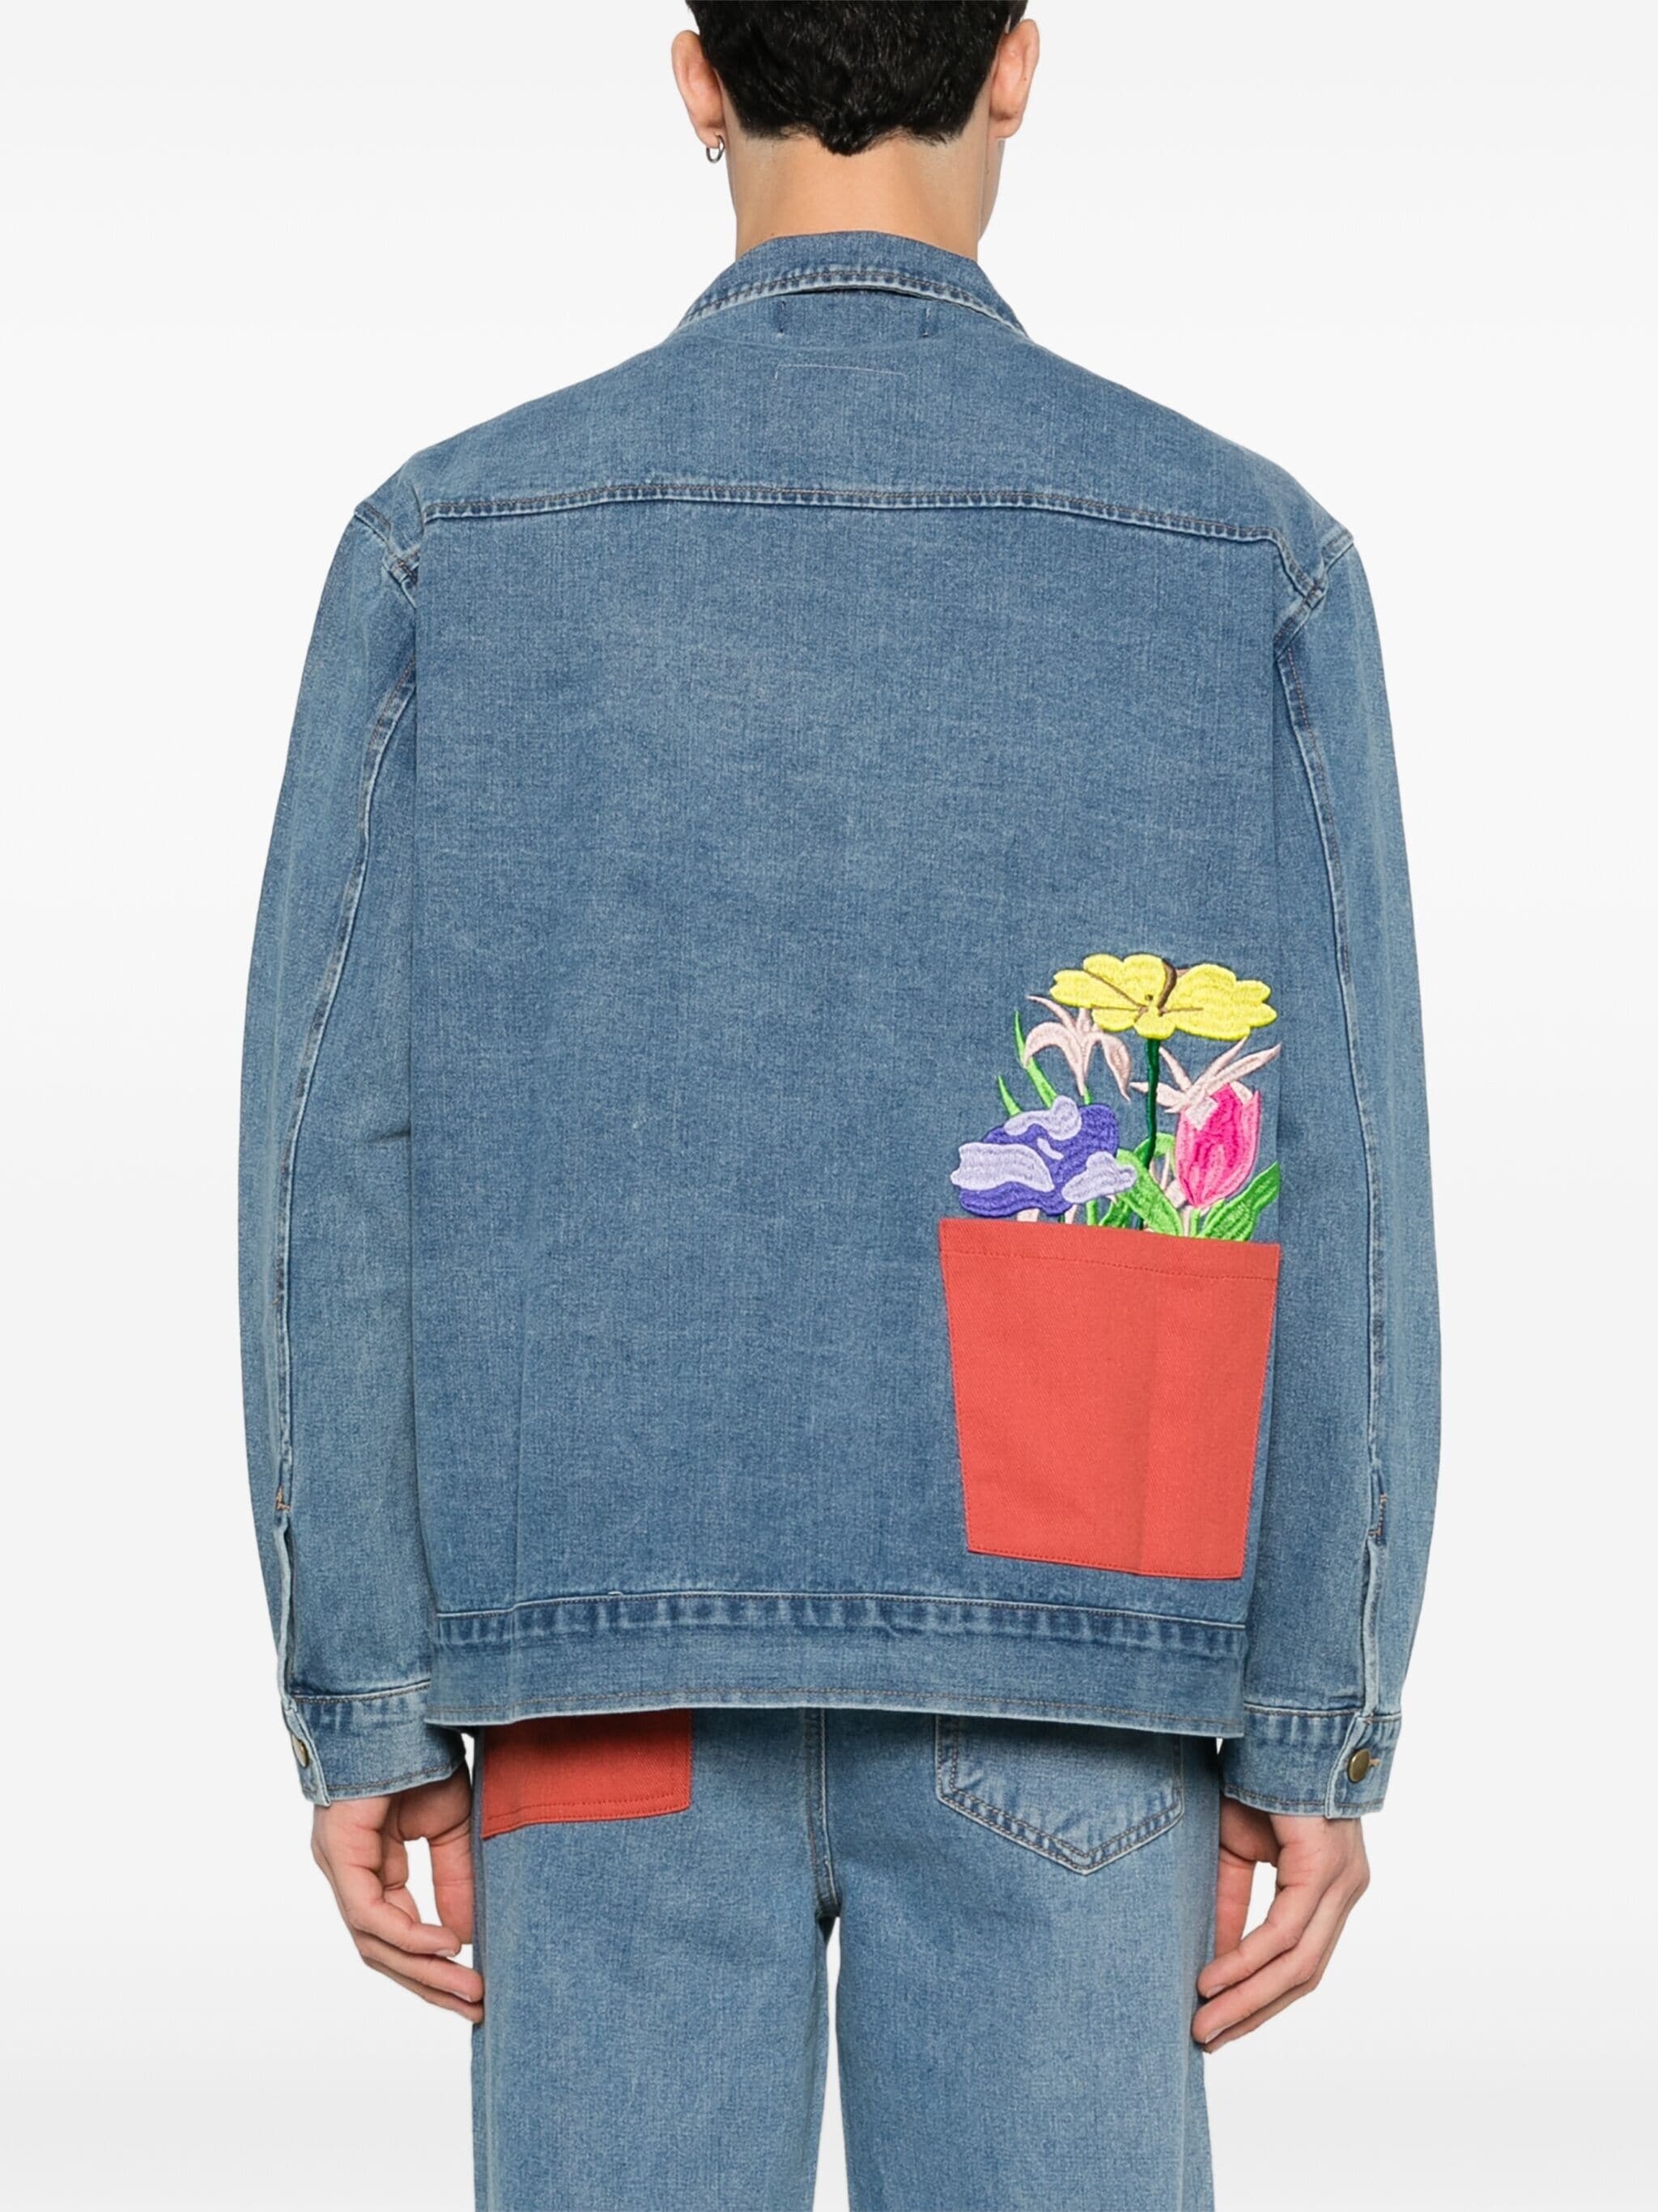 floral-embroidered denim jacket - 4